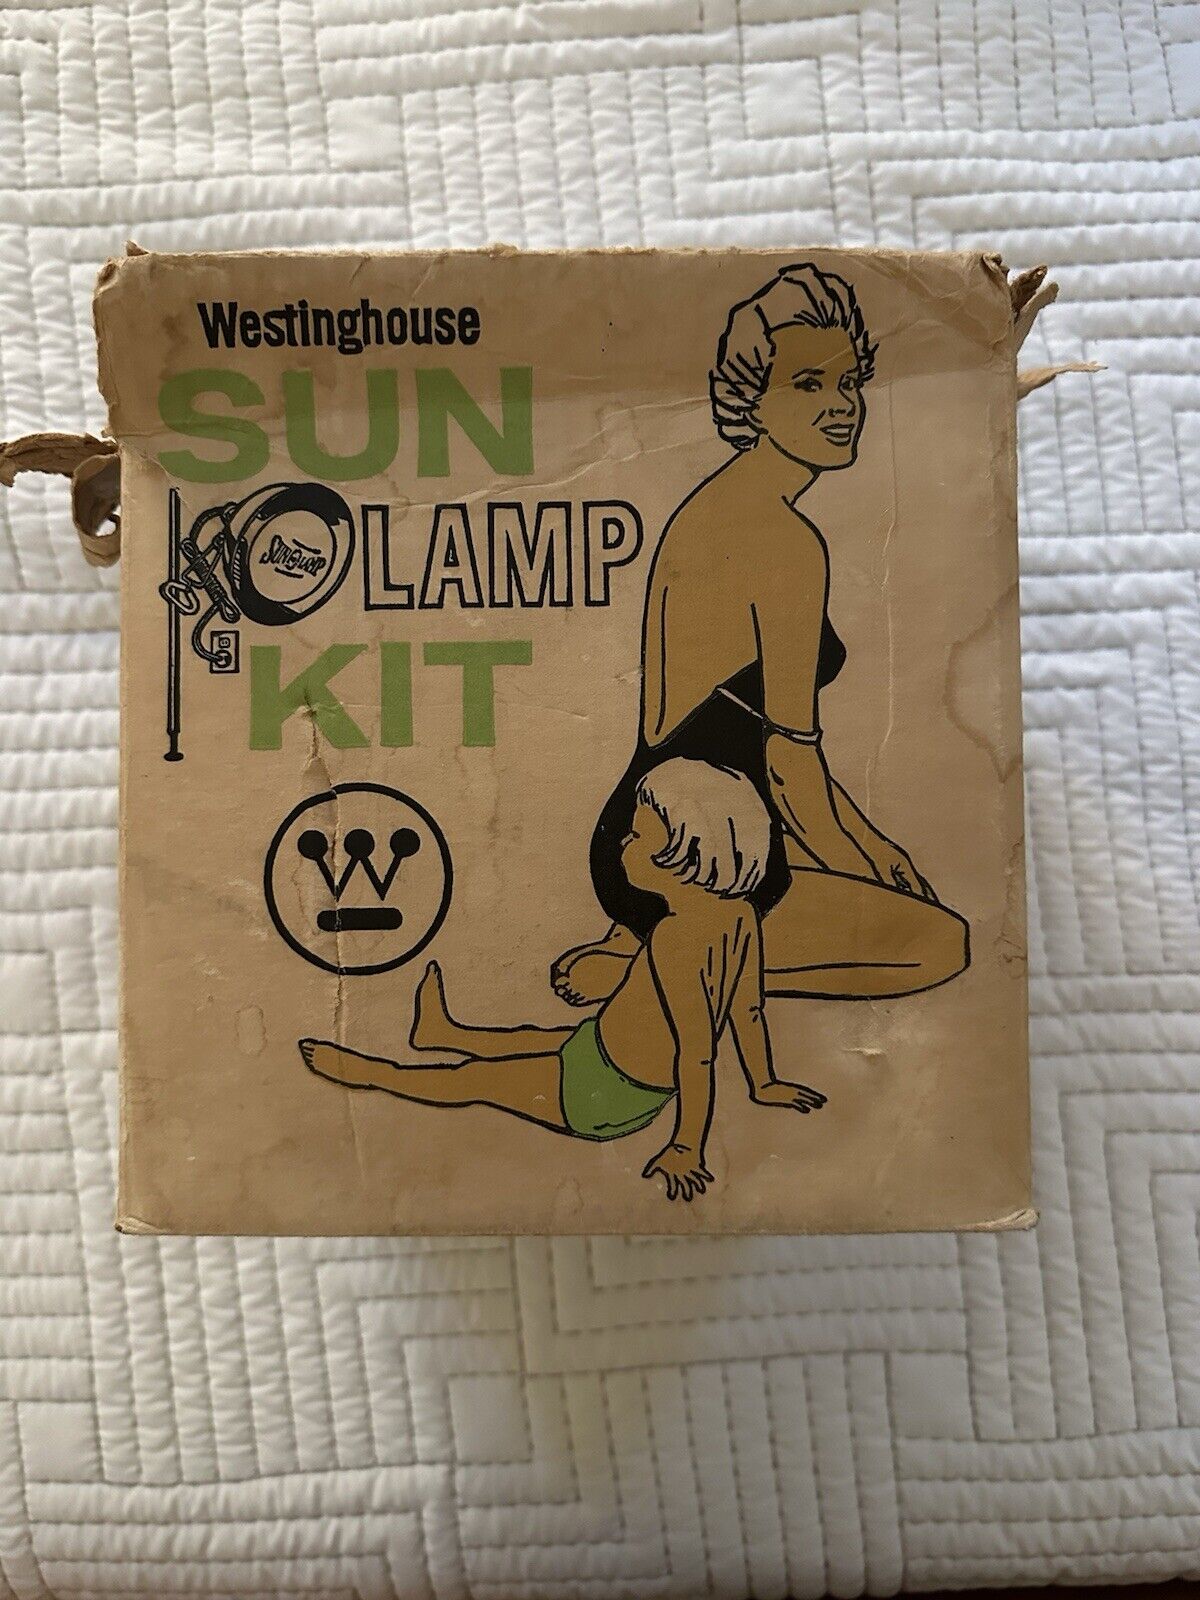 Vintage Sun Lamp Kit Westinghouse Working Tanning Light Original Box, Working